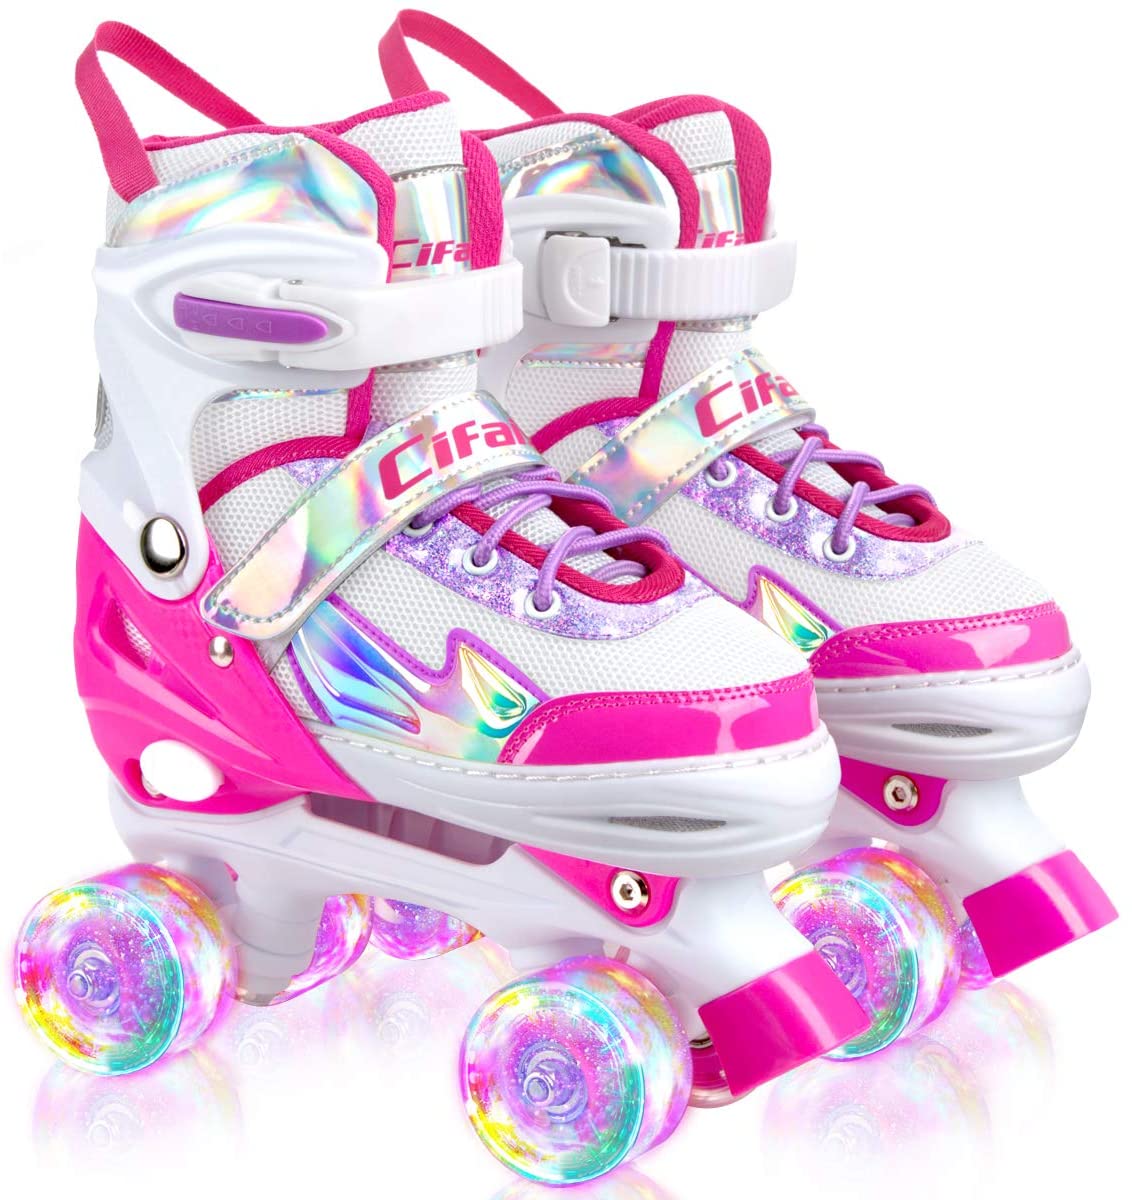 Roller Skates for Girls Boys and Kids 4 Size Adjustable Toddler Roller Skates US 